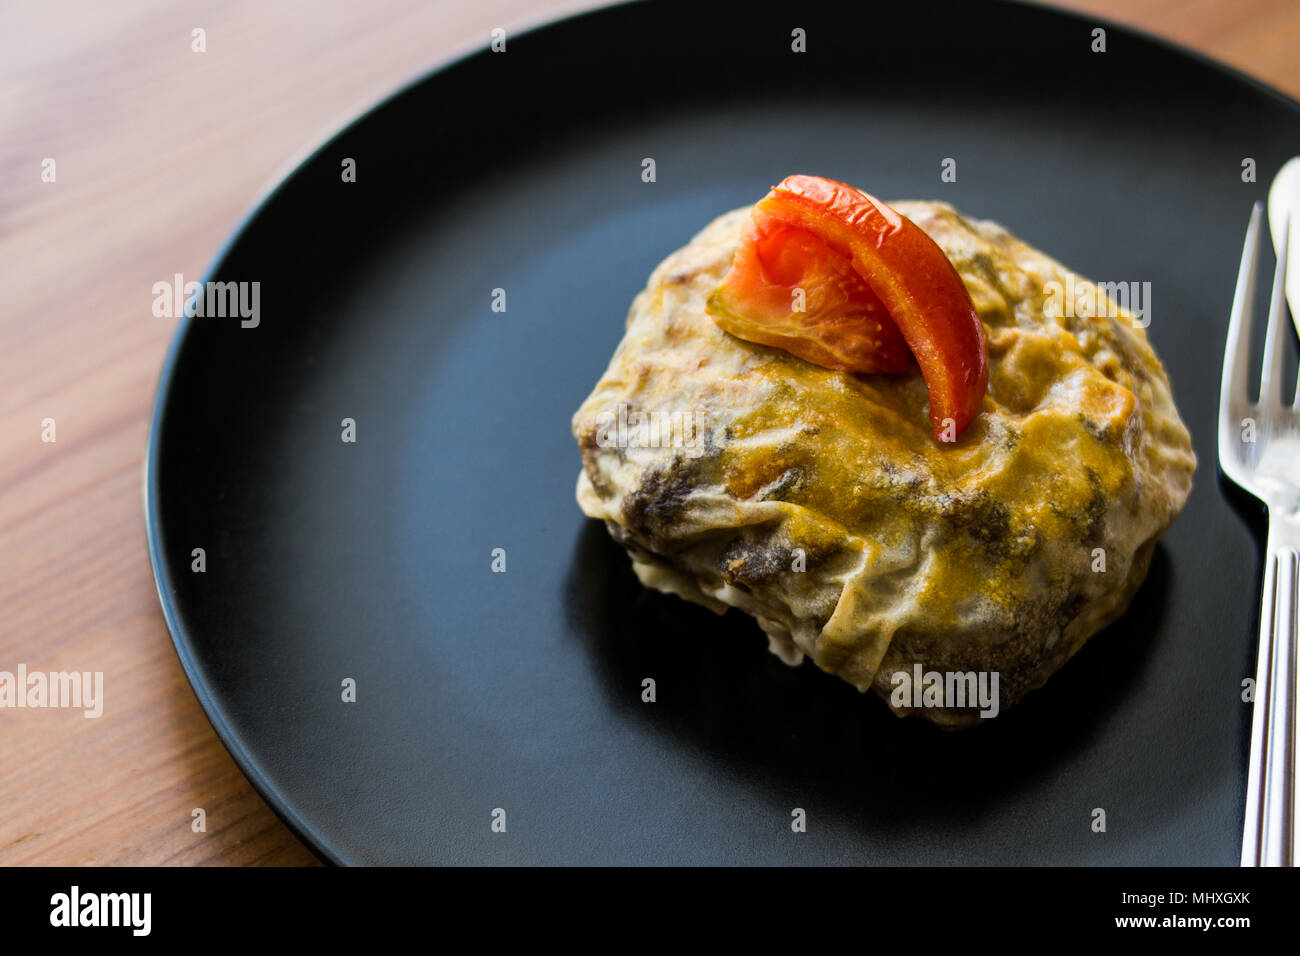 Türkische Bohca Kebab/Crepe mit Cubed Meatball und Gemüse auf einem Holz- Oberfläche. Stockfoto